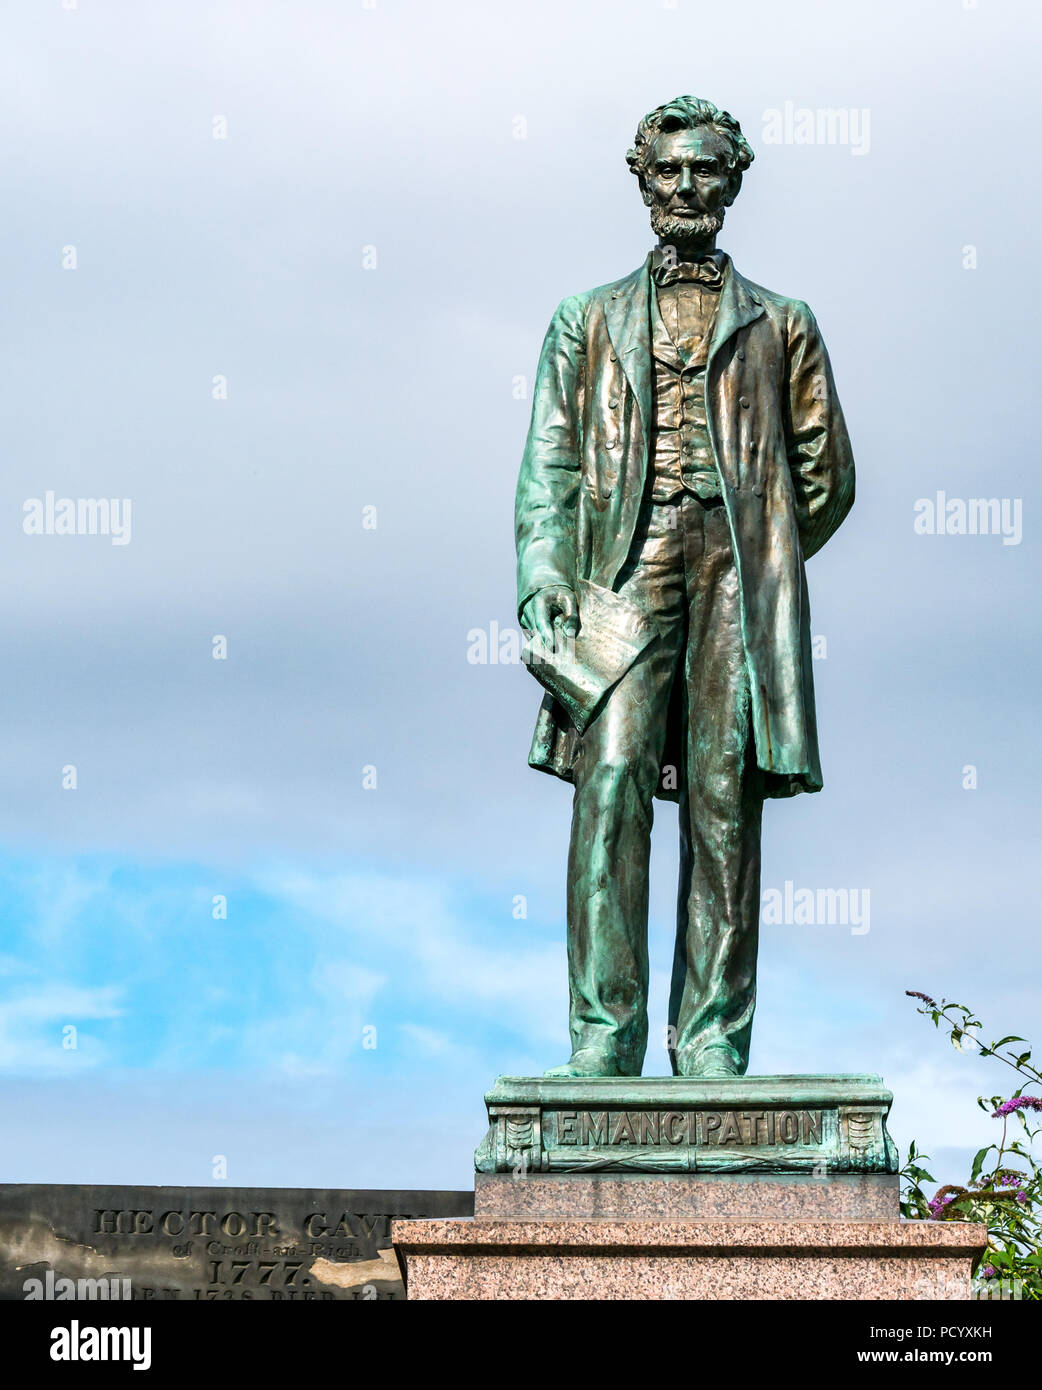 Statue d'Abraham Lincoln Mémorial américain, Écossais, ancien cimetière cimetière Calton, Édimbourg, Écosse, Royaume-Uni Banque D'Images